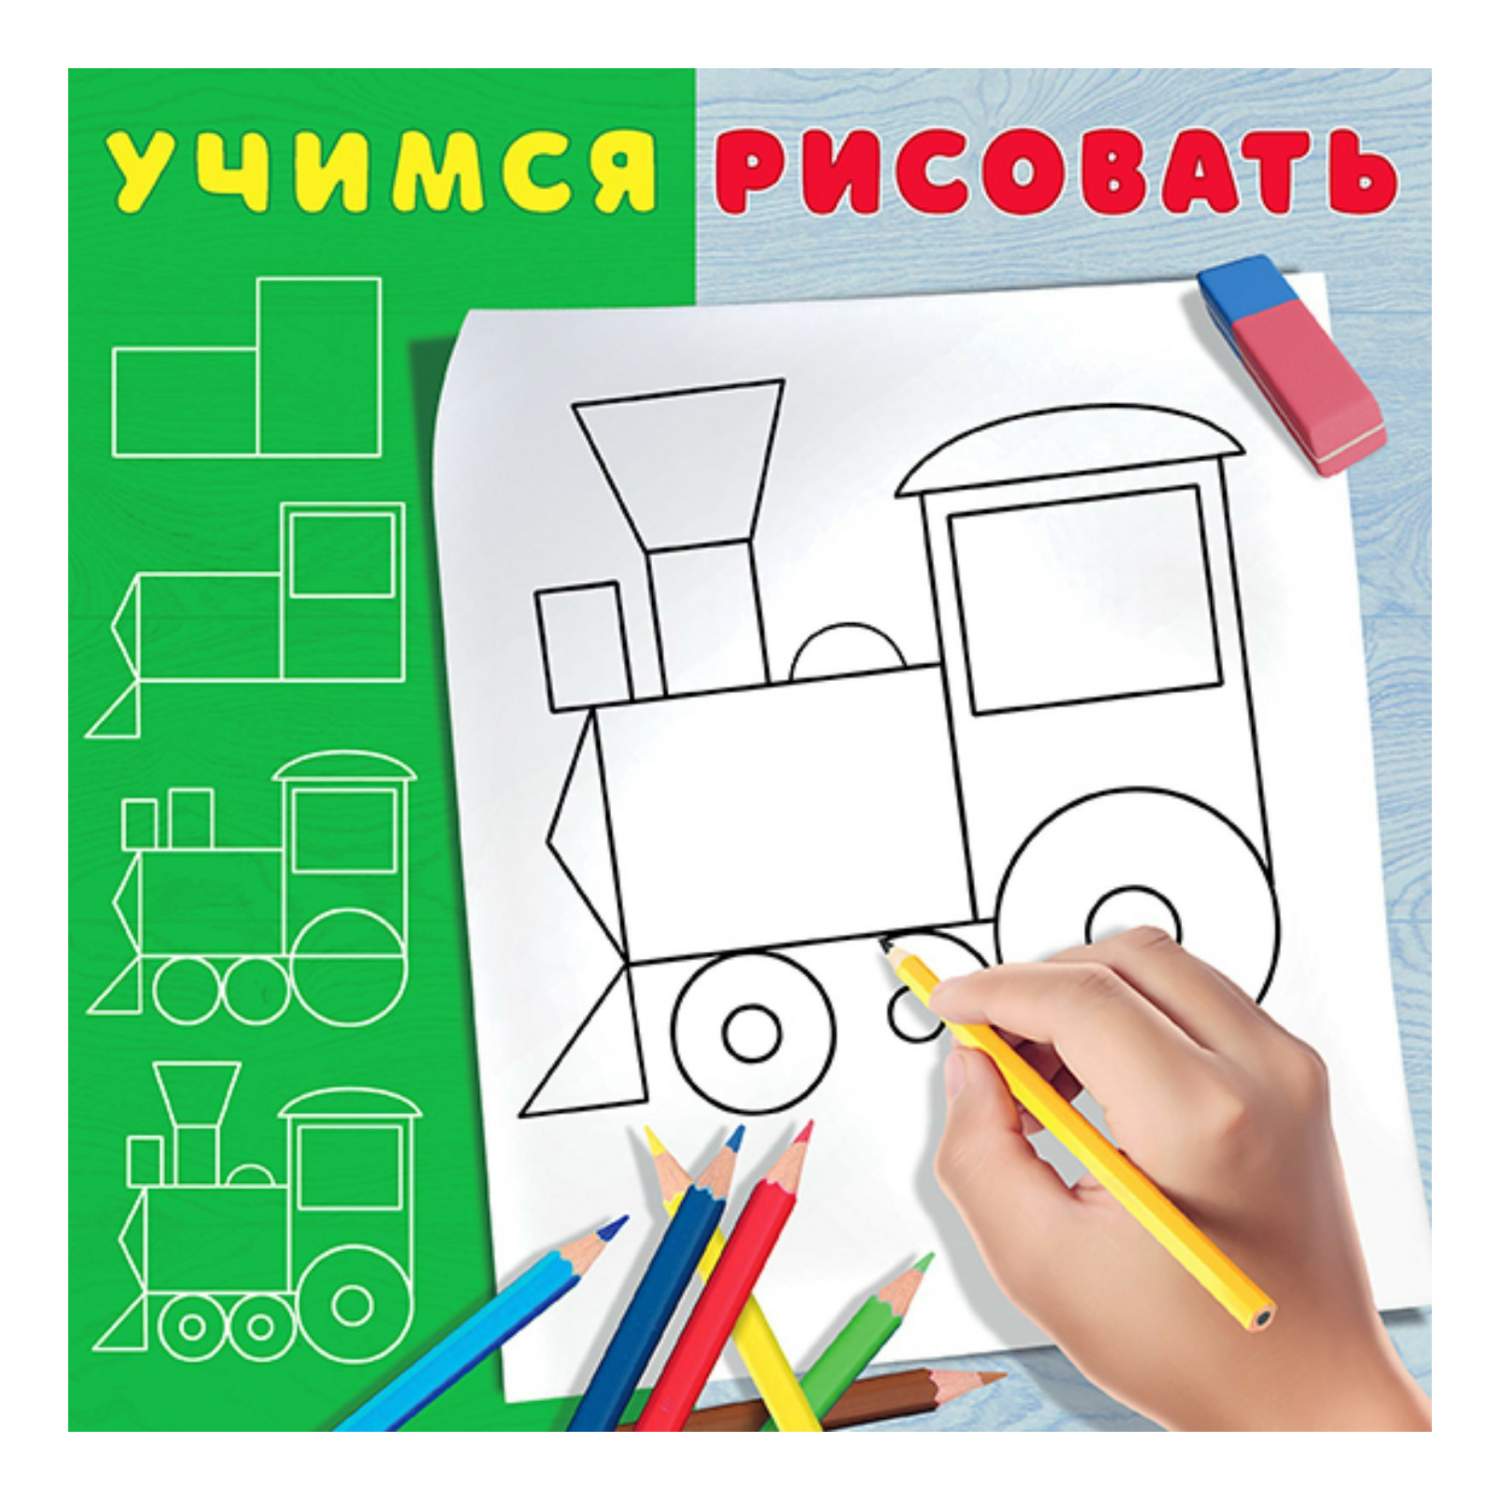 Рубрикатор мест и организаций - Народная Карта Яндекса. Справка